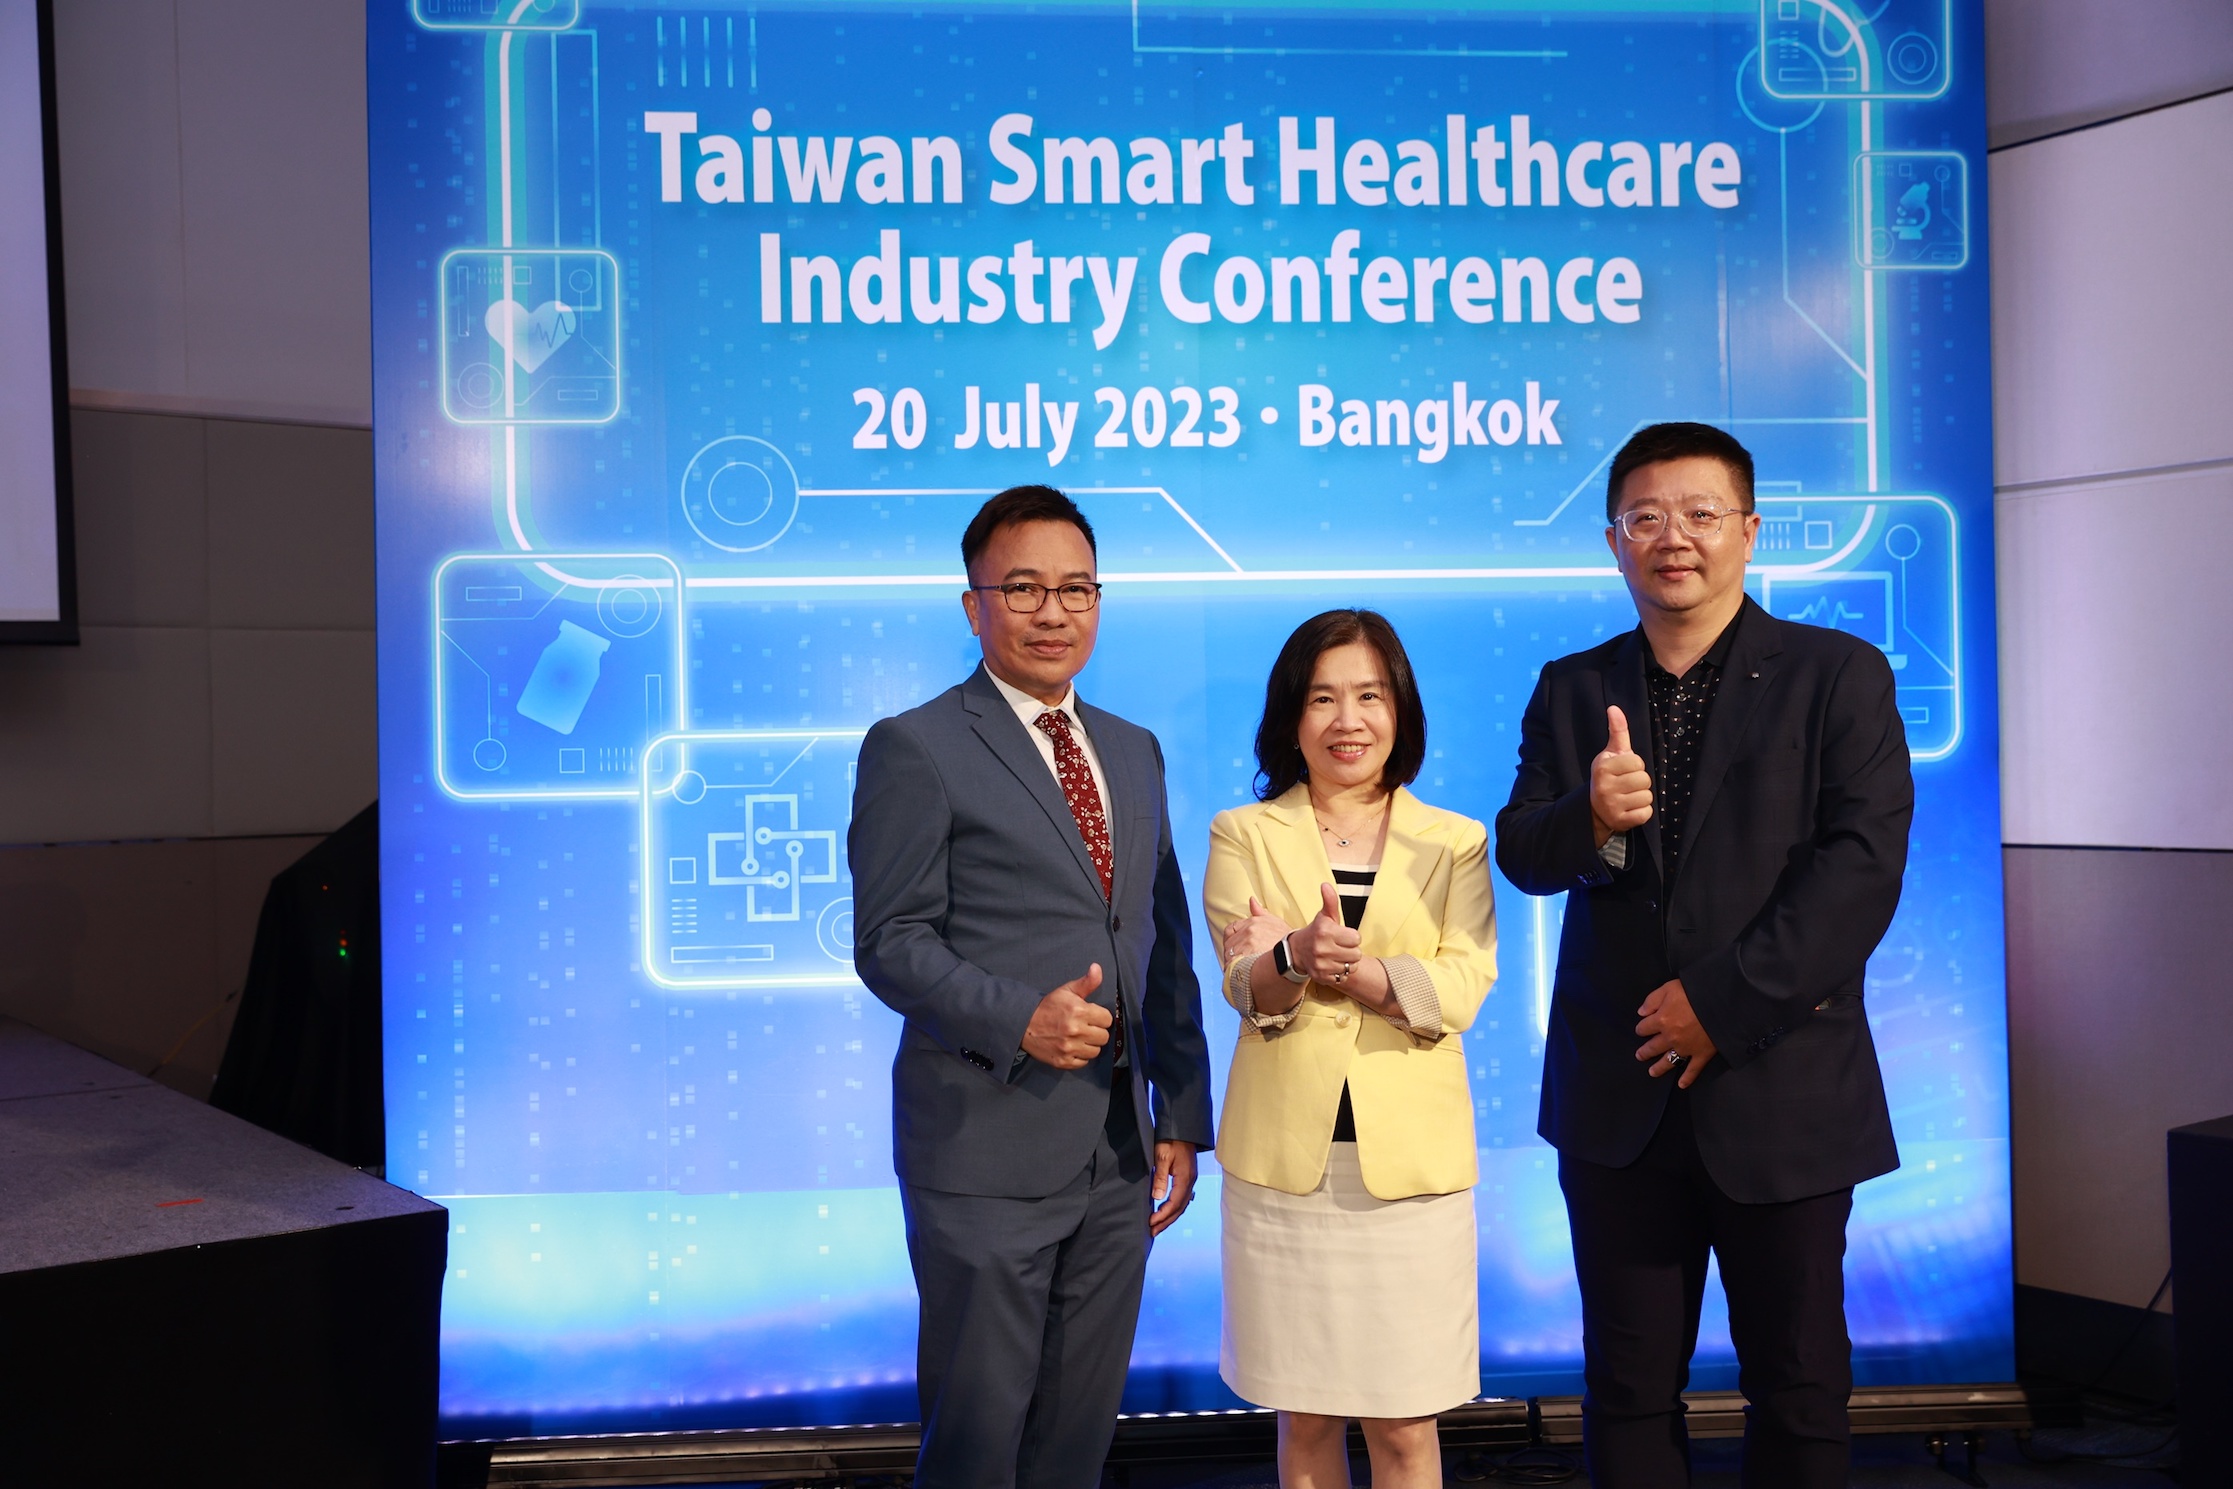 ไต้หวัน ปักหมุดไทย จัดงานประชุมครั้งใหญ่ “Taiwan Smart Healthcare Industry” หวังเชื่อมโยงการค้า-การลงทุน พร้อมยกระดับการแพทย์ระหว่างประเทศแบบองค์รวม